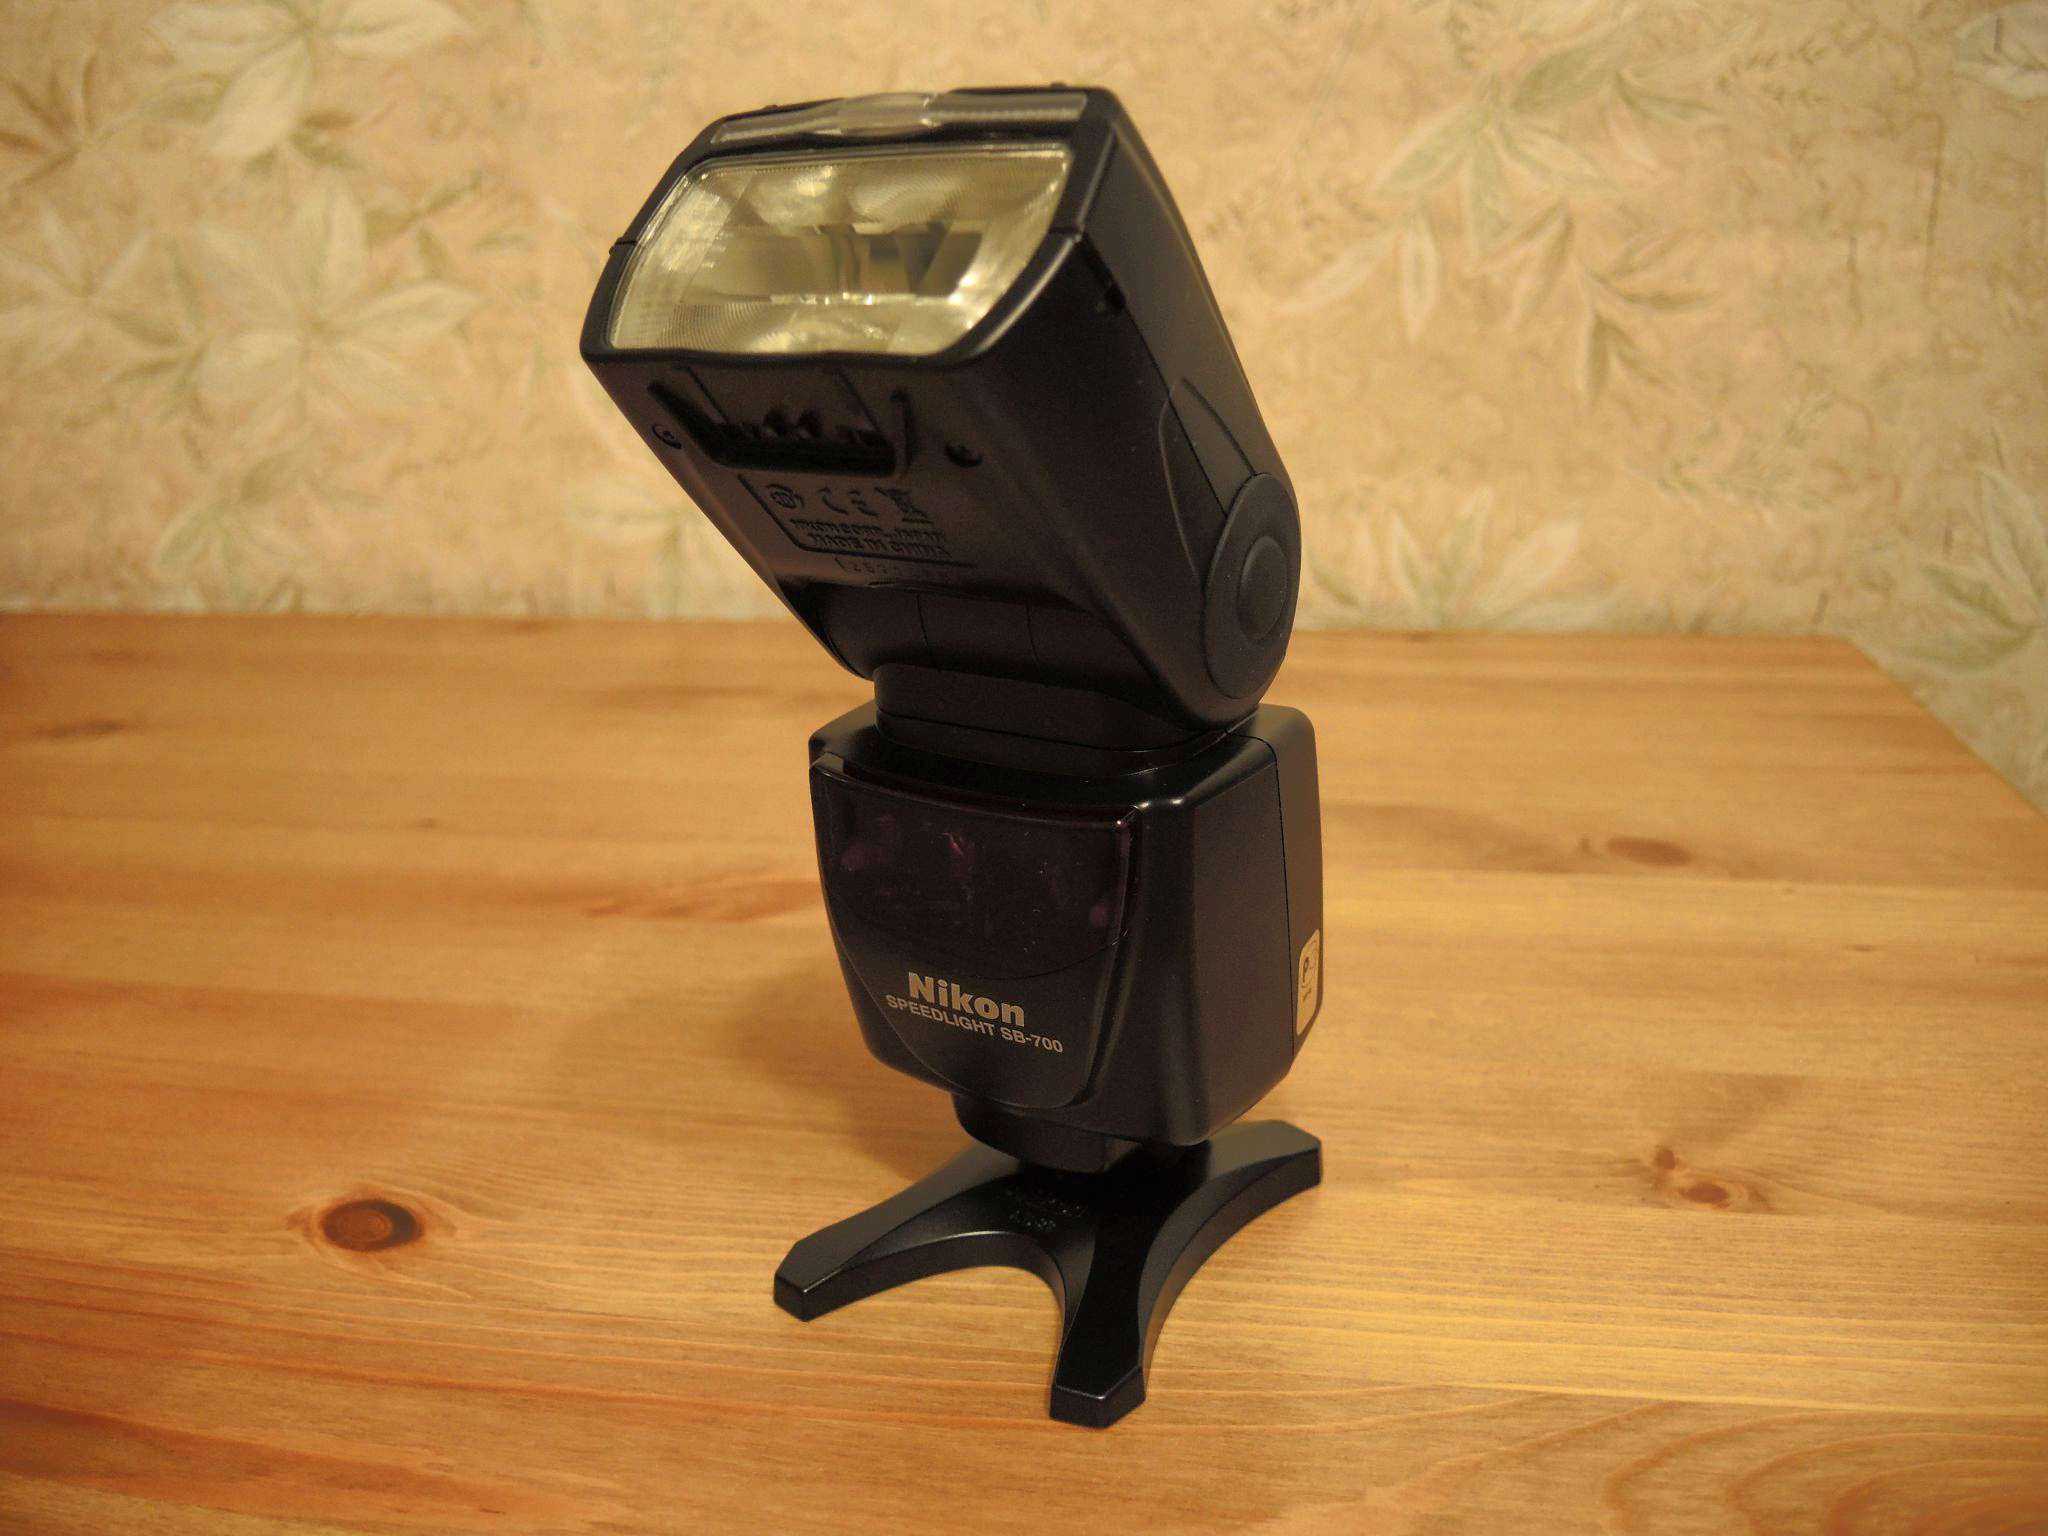 Фотовспышка nikon speedlight sb-700 (fsa03901) купить от 19990 руб в перми, сравнить цены, отзывы, видео обзоры и характеристики